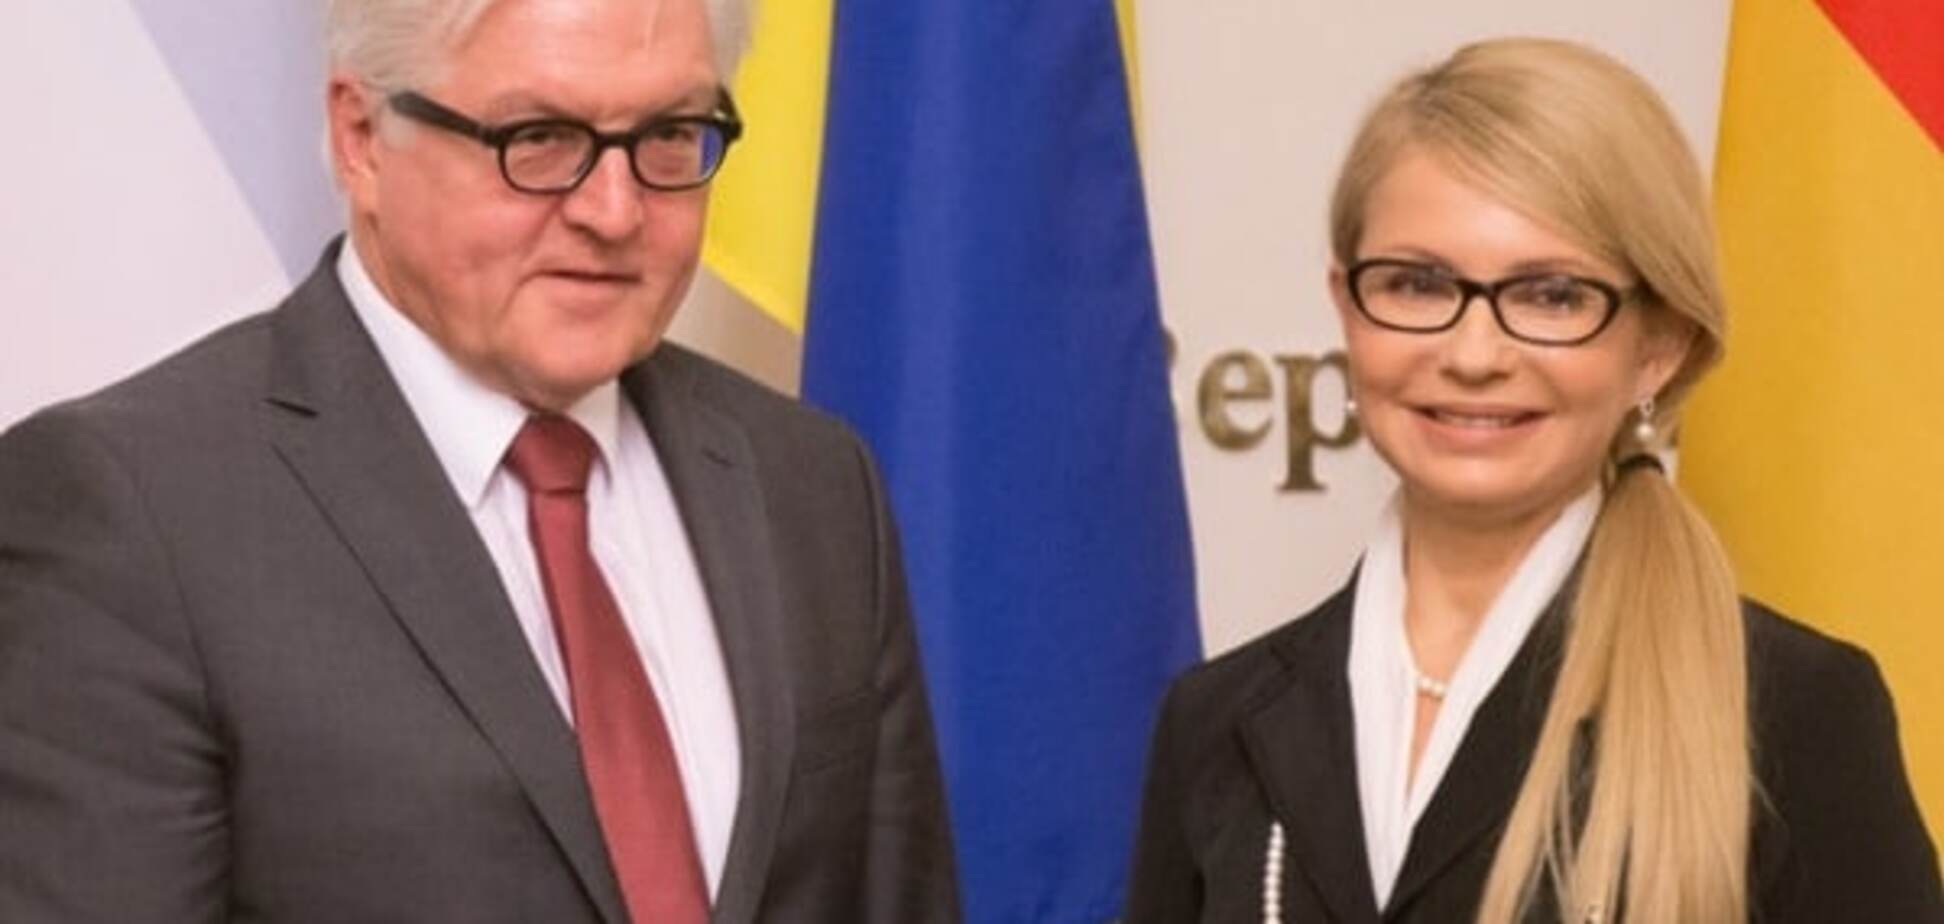 Юля Тимошенко сменила прическу второй раз за месяц